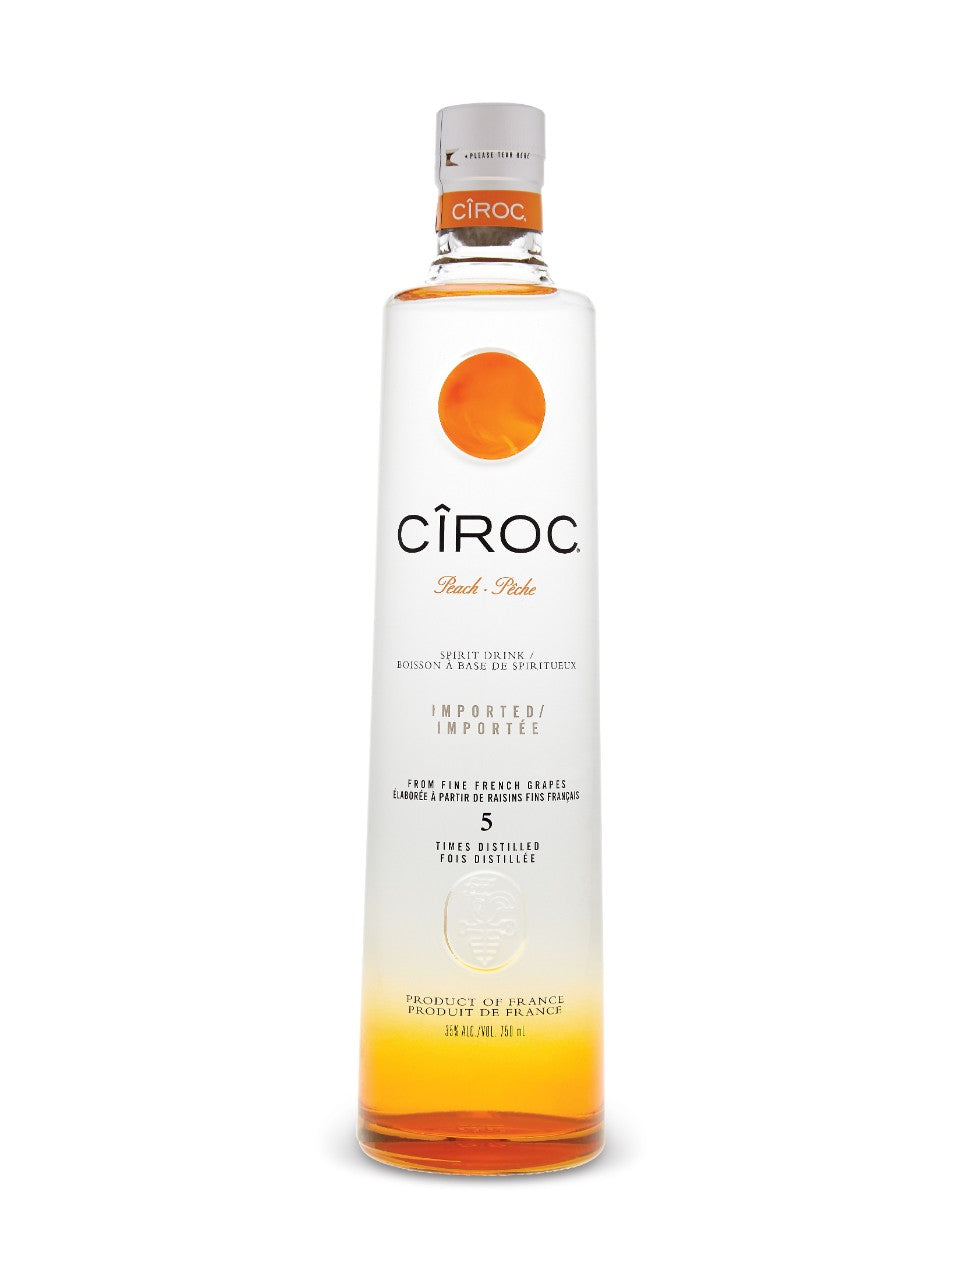 Ciroc Peach Spirit Drink Vodka 750 mL bottle